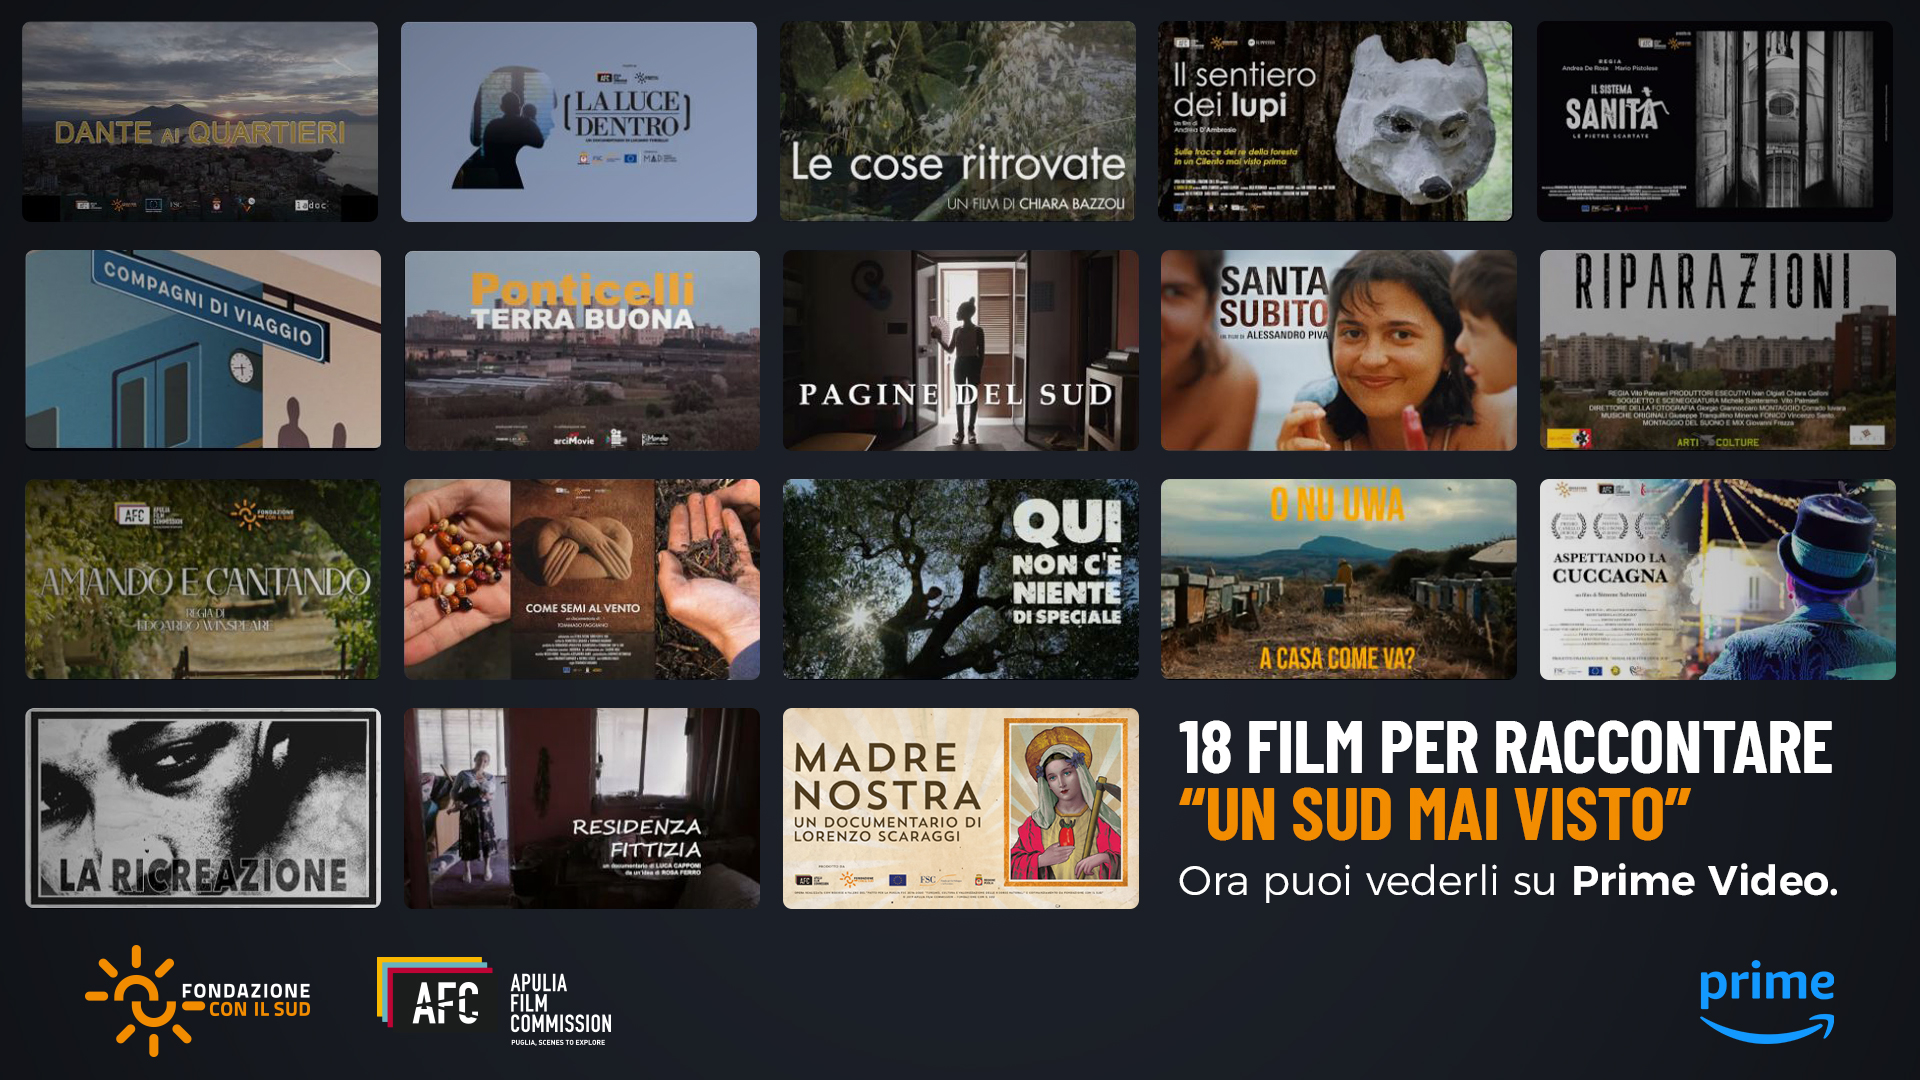 La Fondazione Con il Sud e Apulia Film Commission distribuiranno su Prime Video 18 film prodotti attraverso le due edizioni del “Social Film Production Con il Sud”